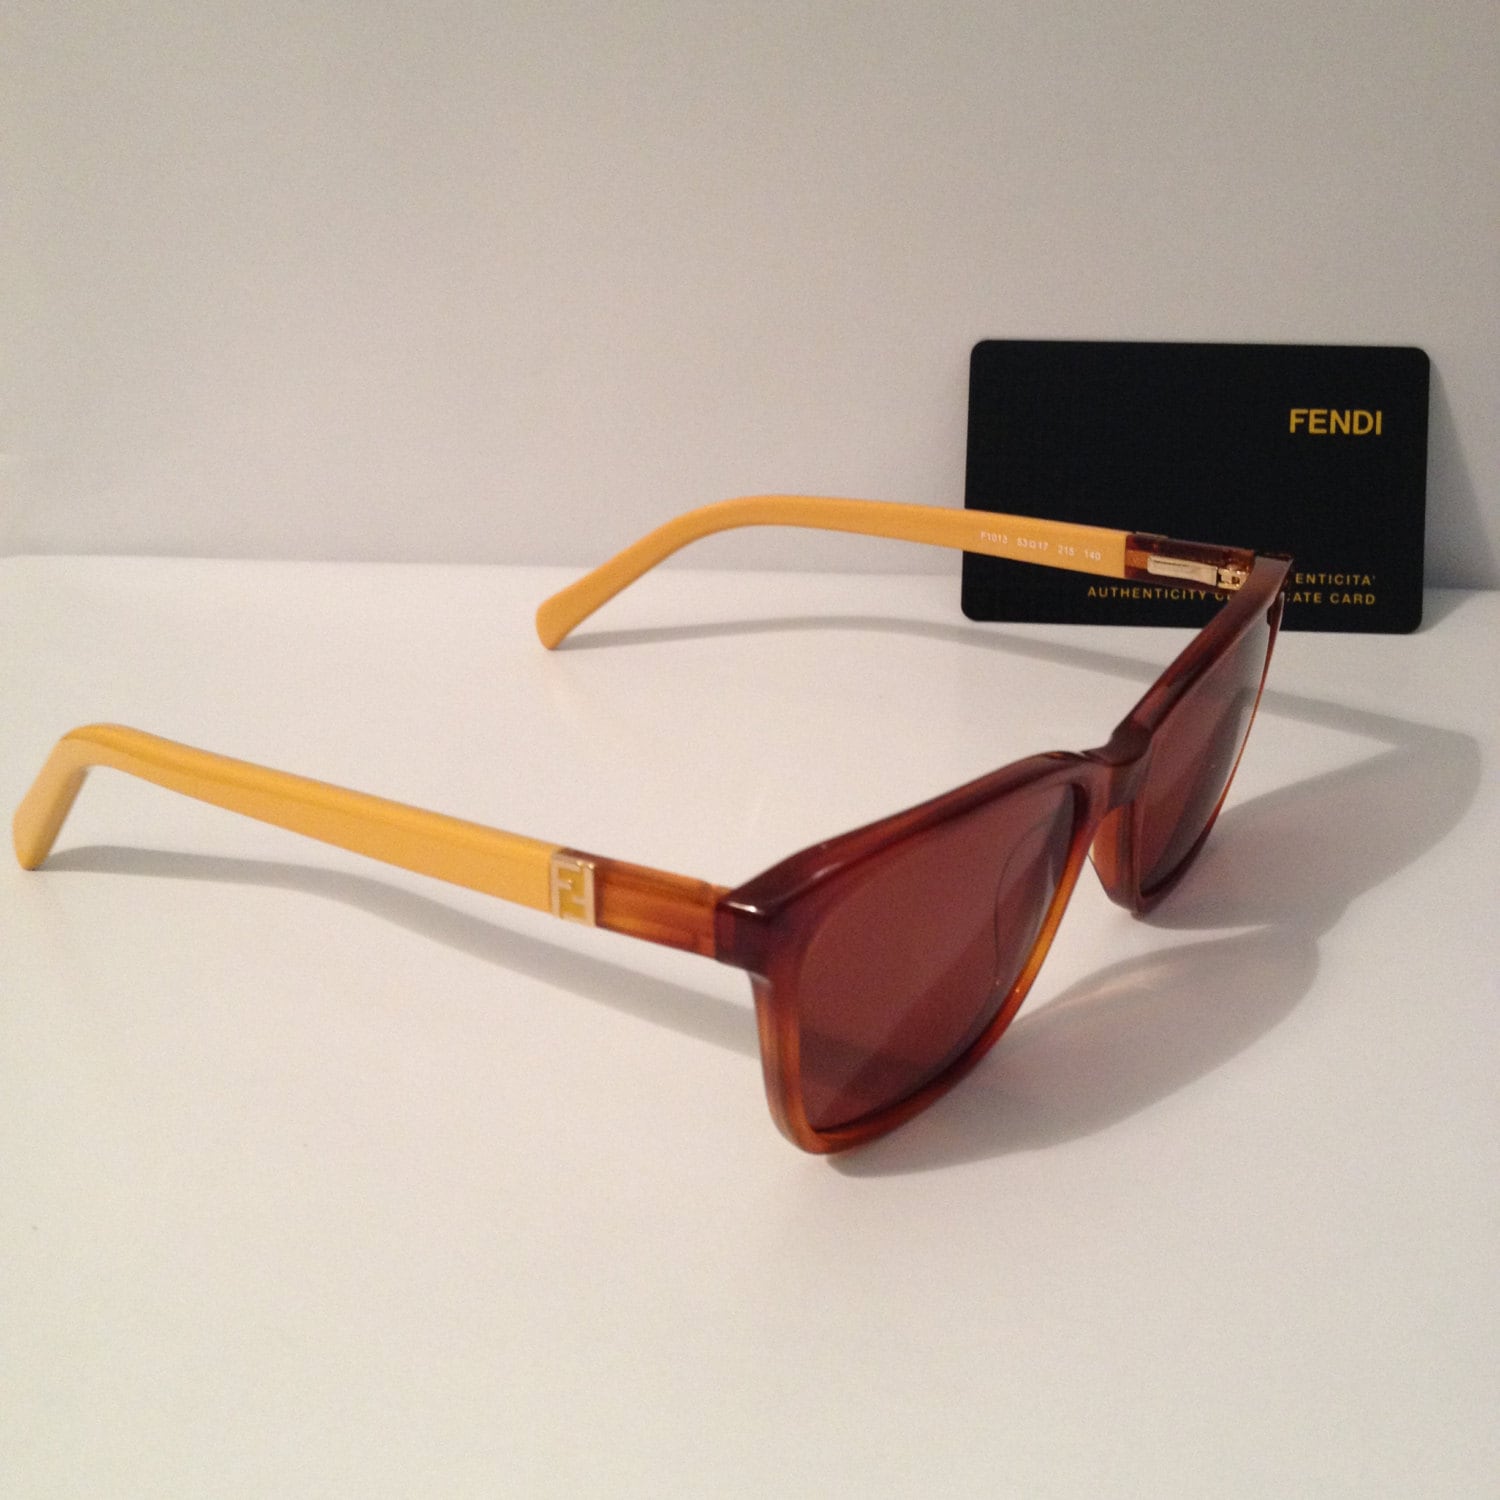 Fendi Sunglasses- Vintage Sunglasses New Old Stock on SUPER SALE